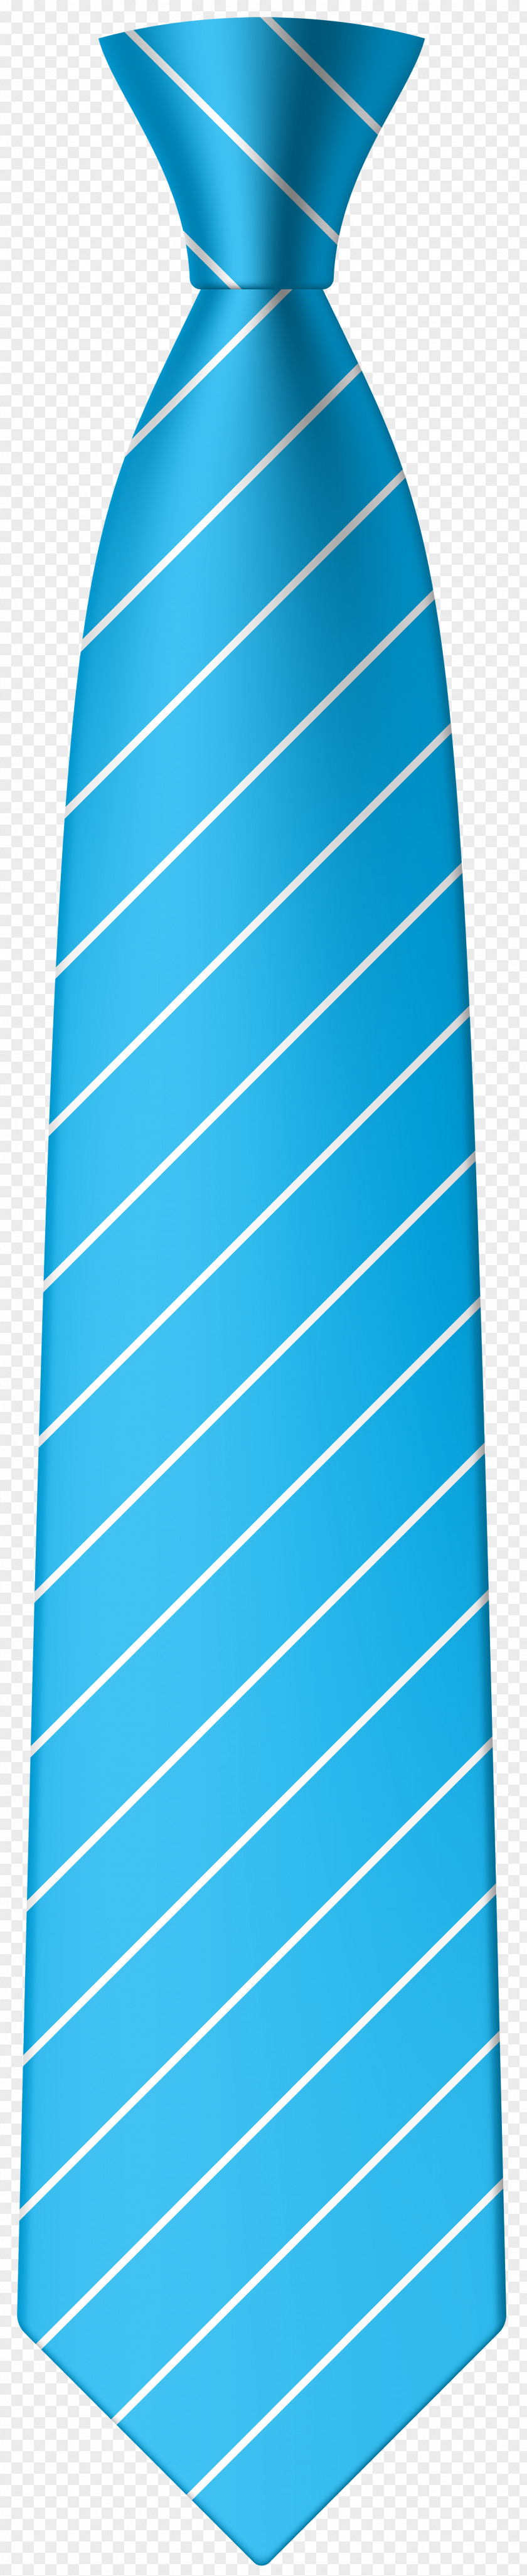 Blue Tie Clip Art Image Necktie Bow PNG